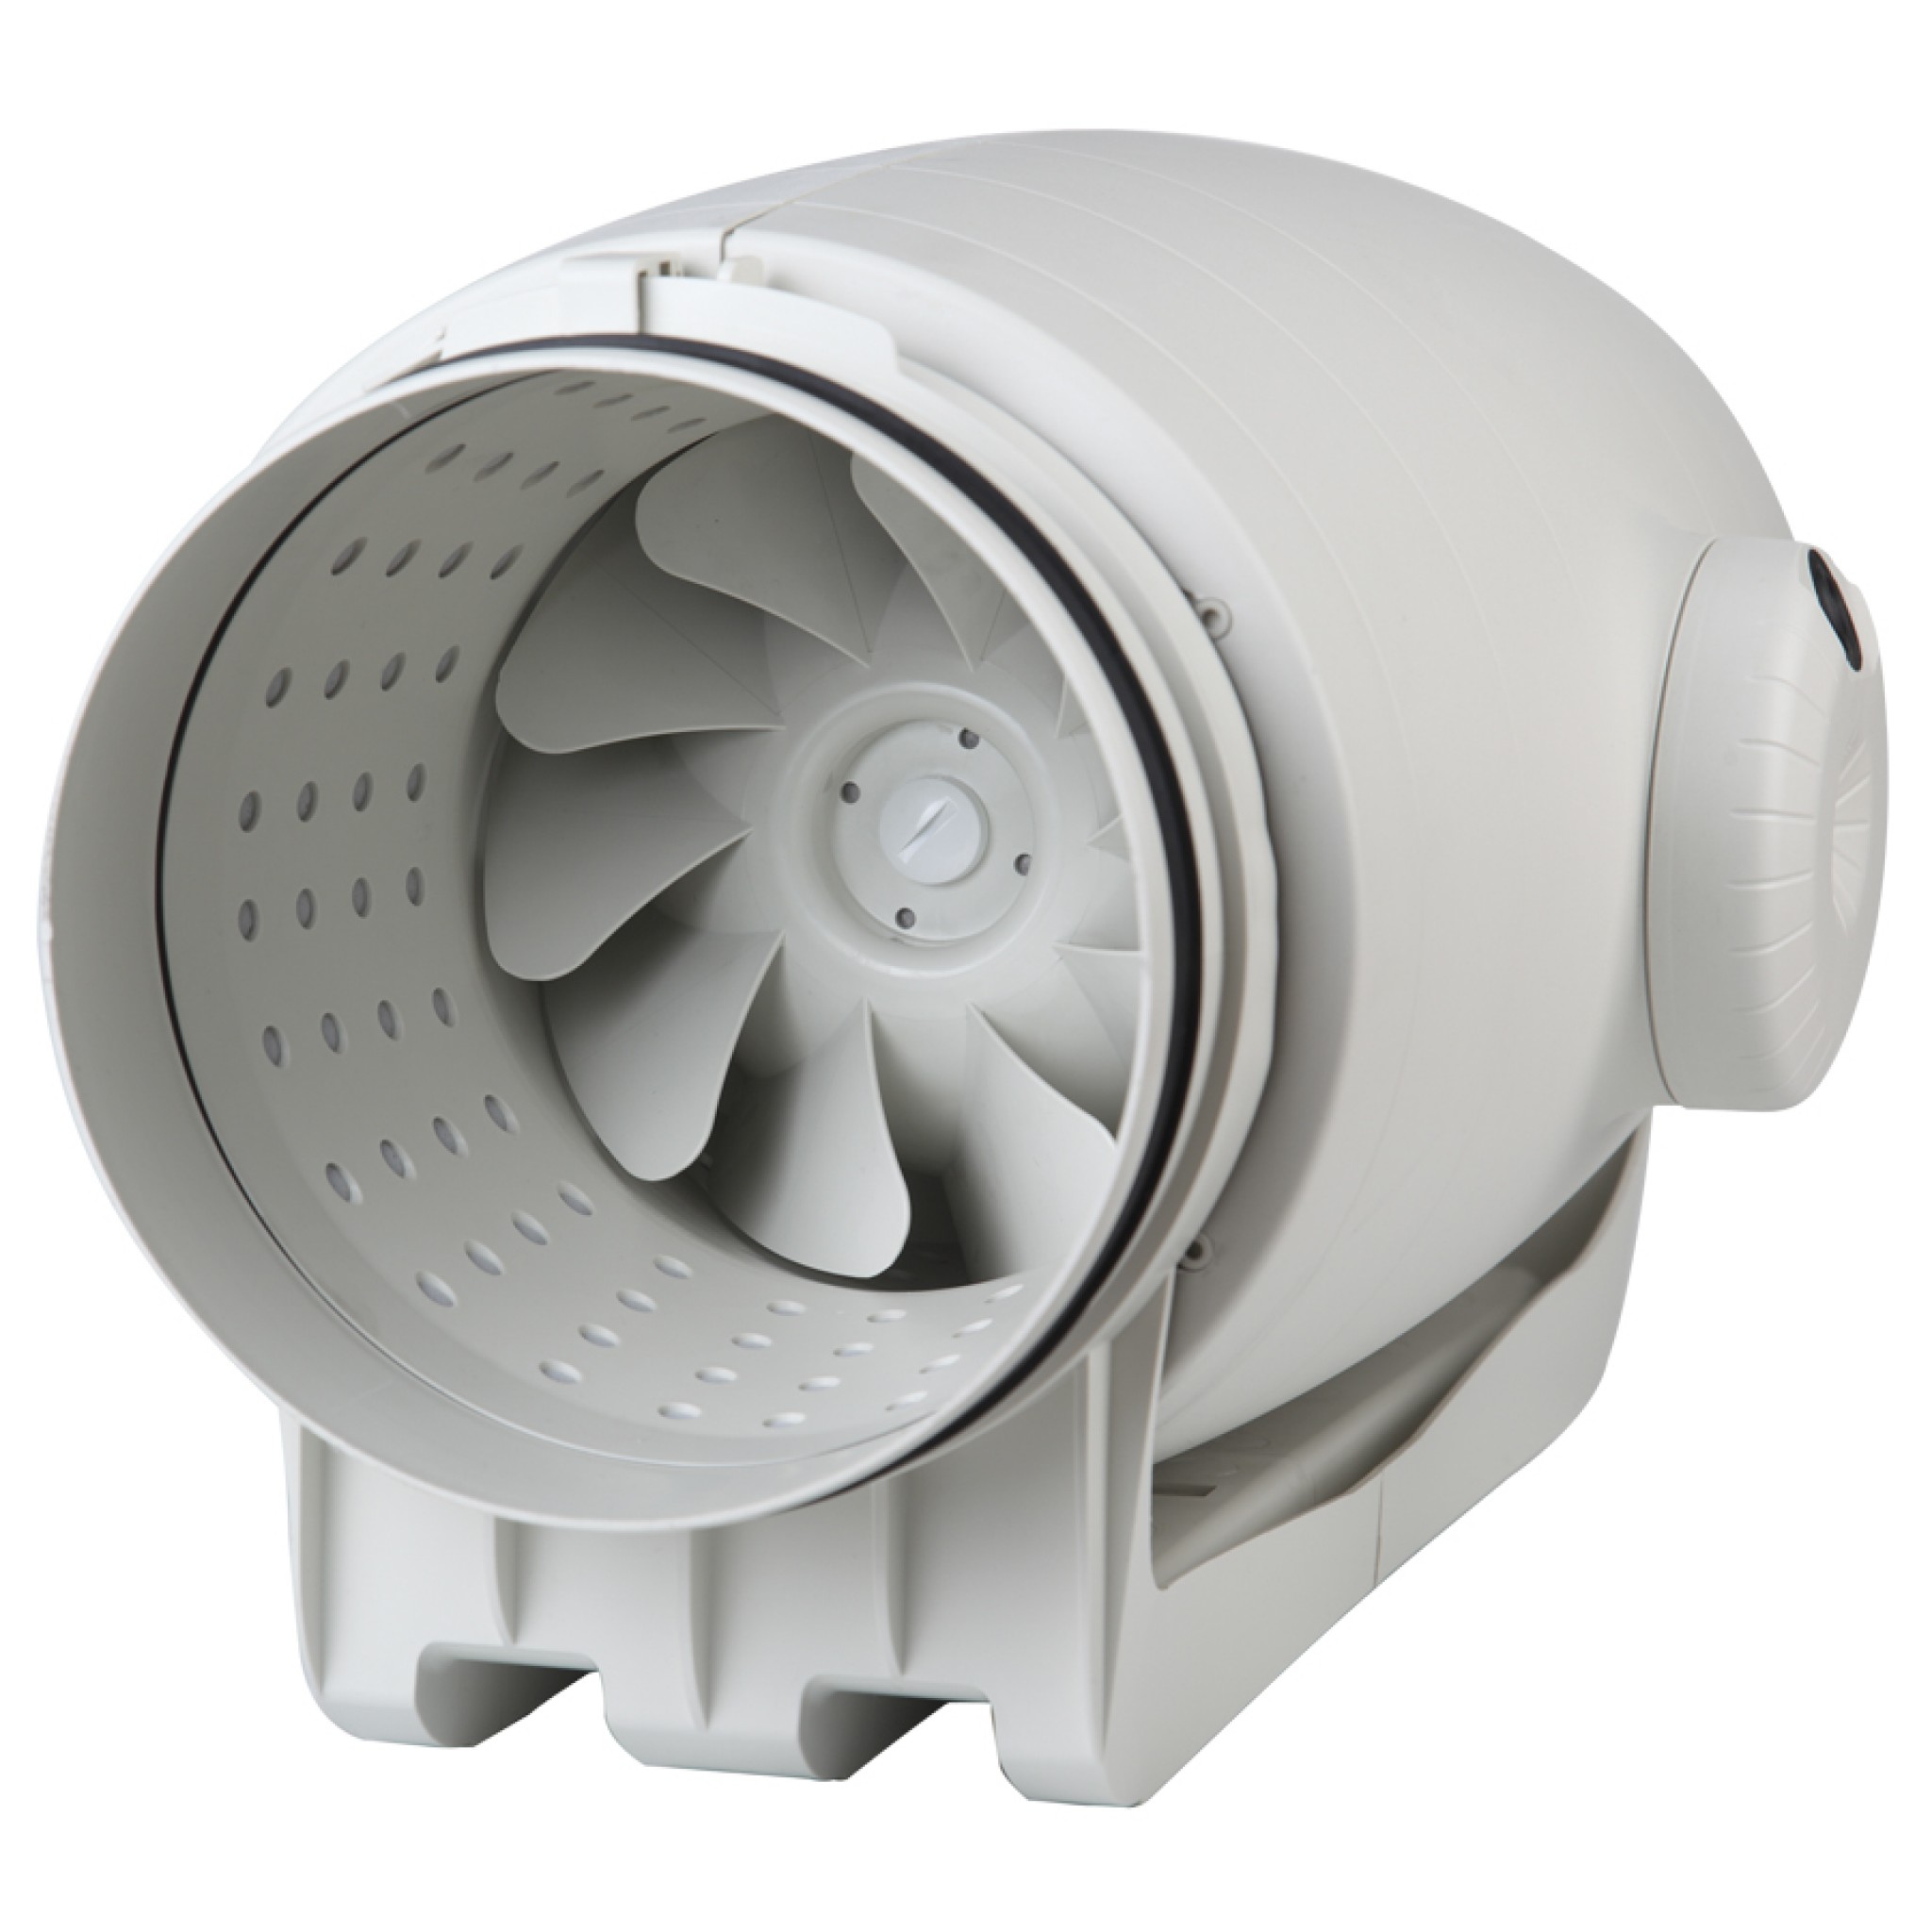 Канальный вентилятор для кухни 160 мм Soler&Palau TD-500/150-160 Silent Ecowatt